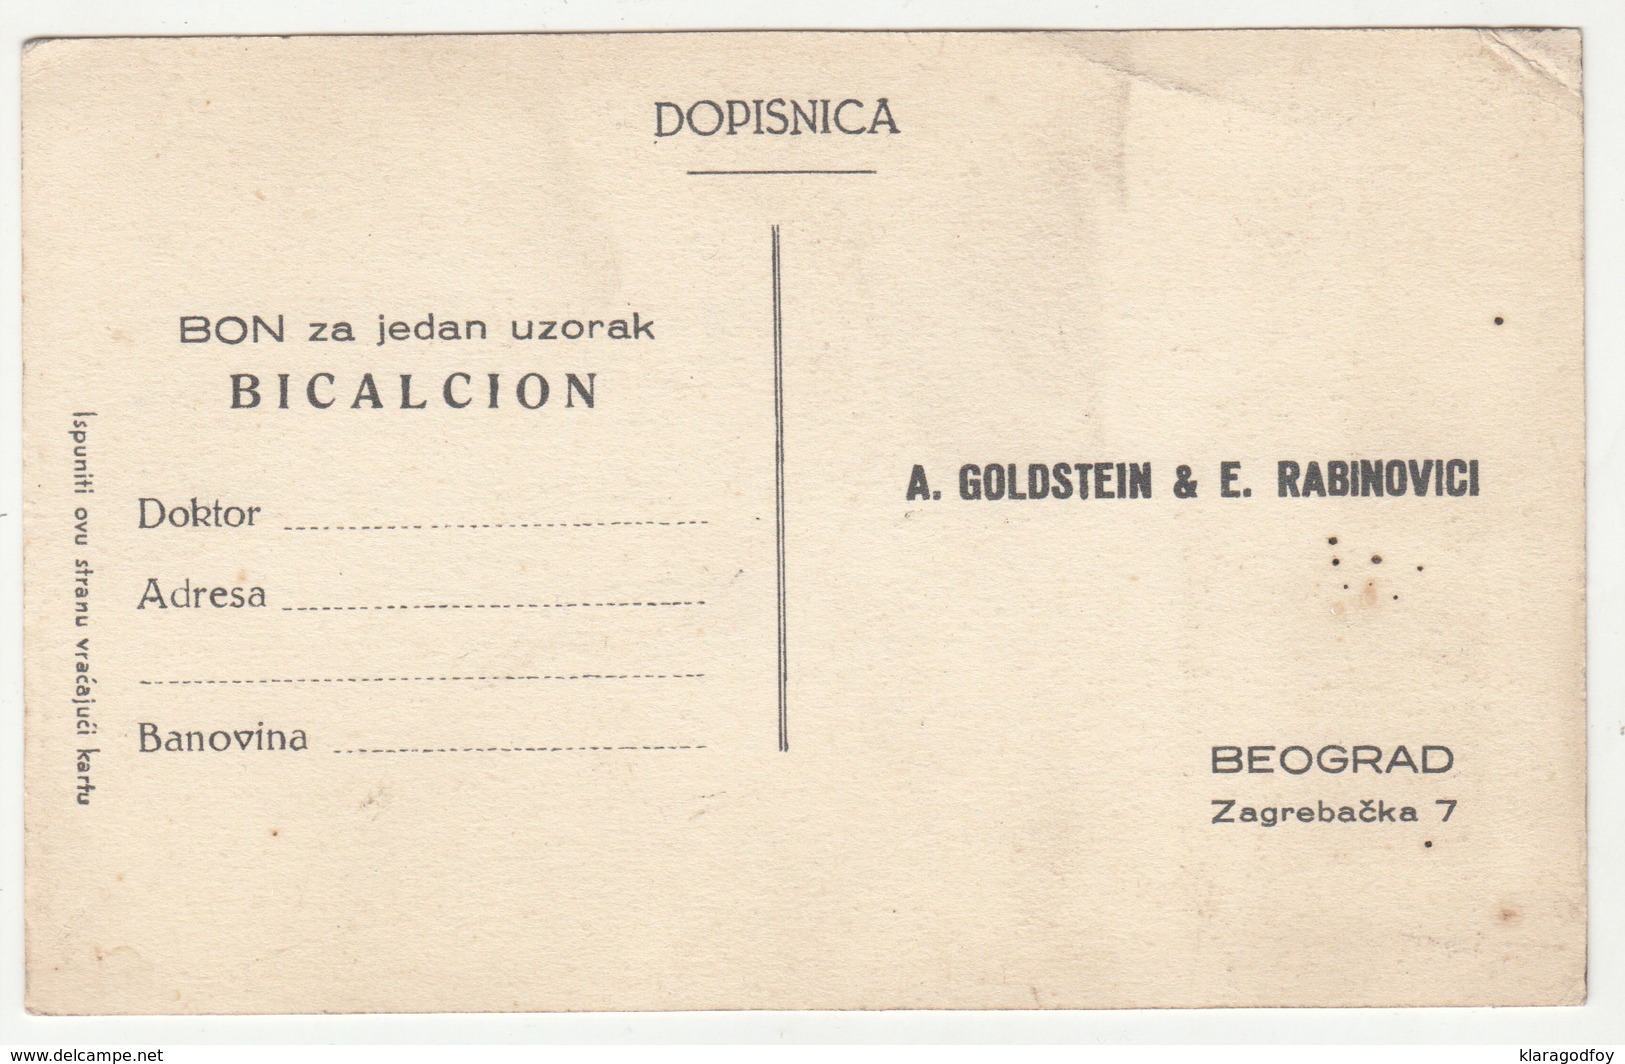 Bicalcion A. Goldstein & E. Rabinovici Preprinted Reply Vintage Postcard B190401 - Pubblicitari